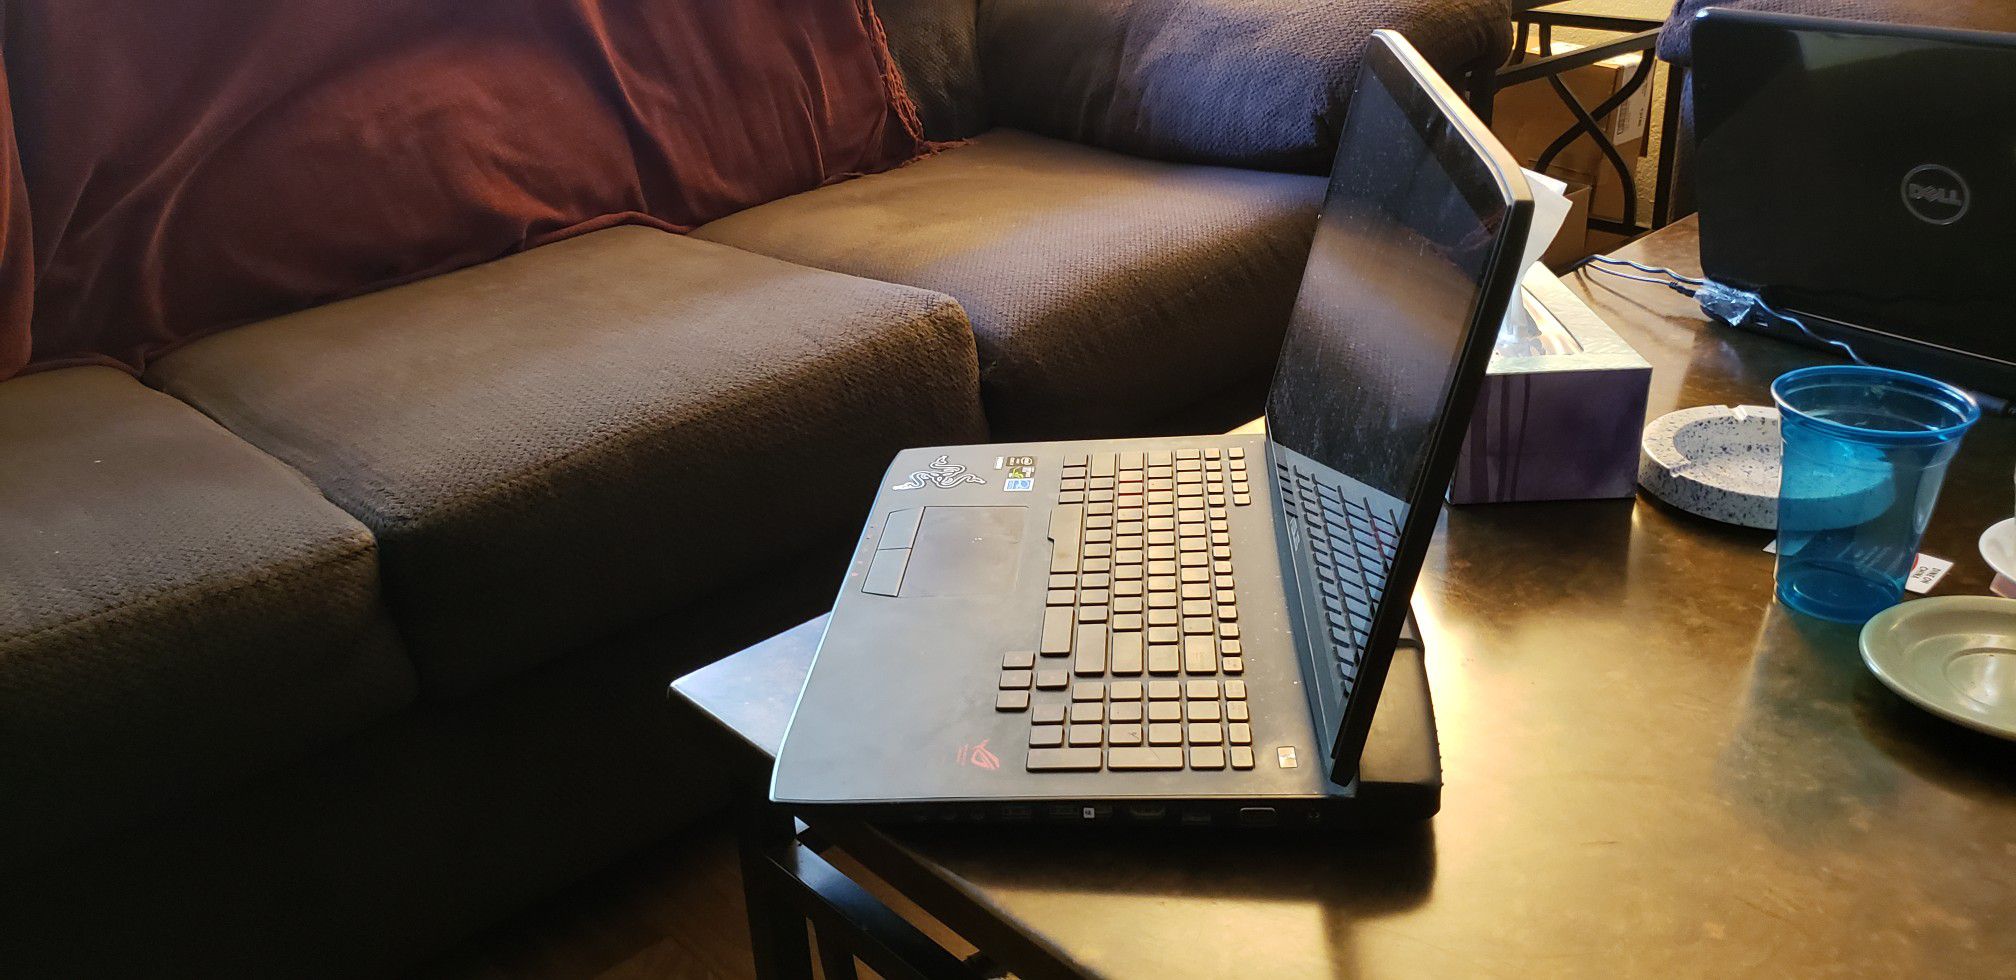 Asus ROG G751JY 17.3" gaming laptop